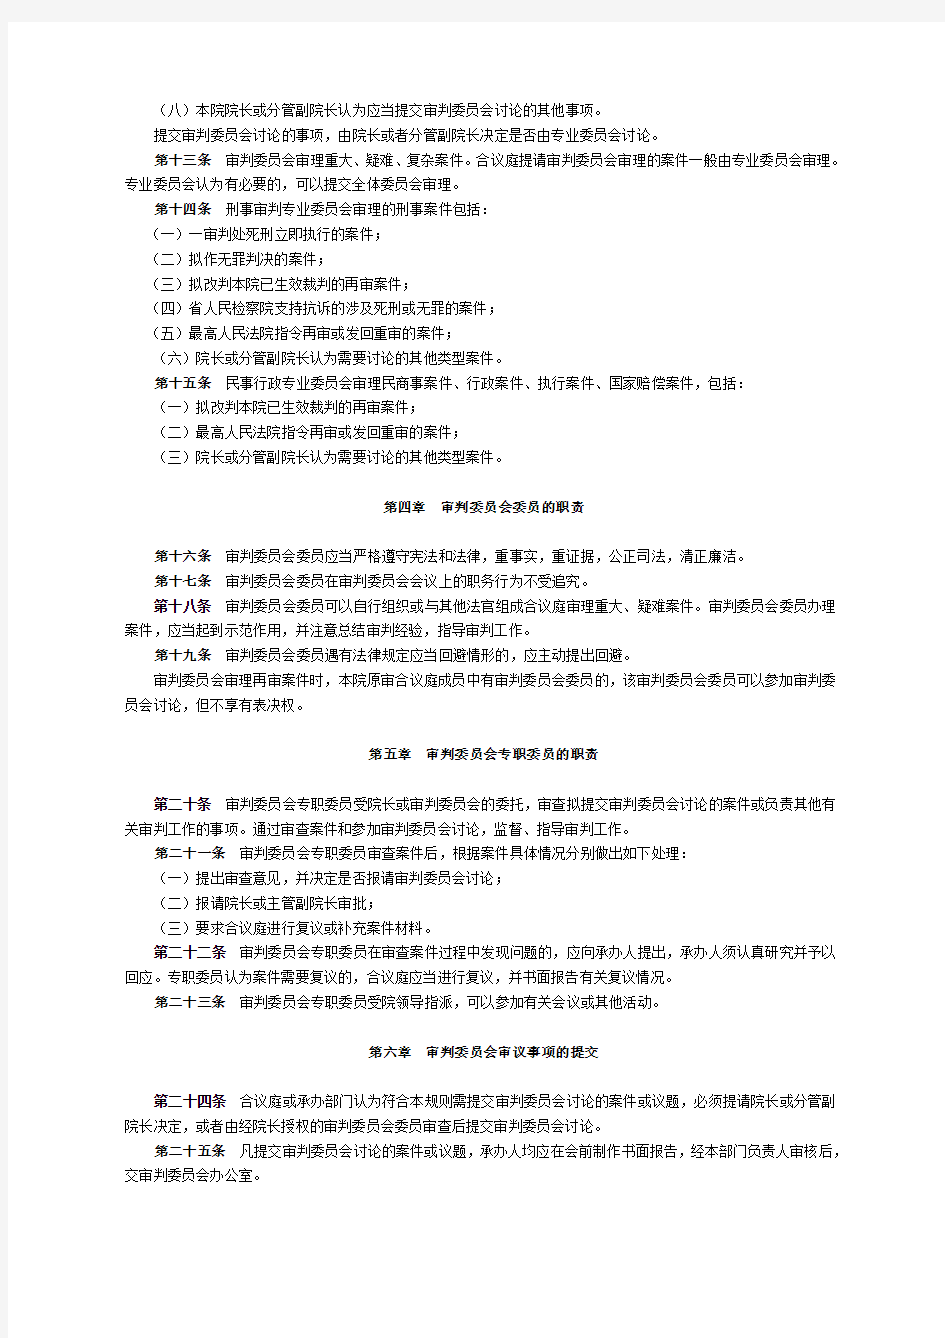 广东省高级人民法院审判委员会工作规则(试行)